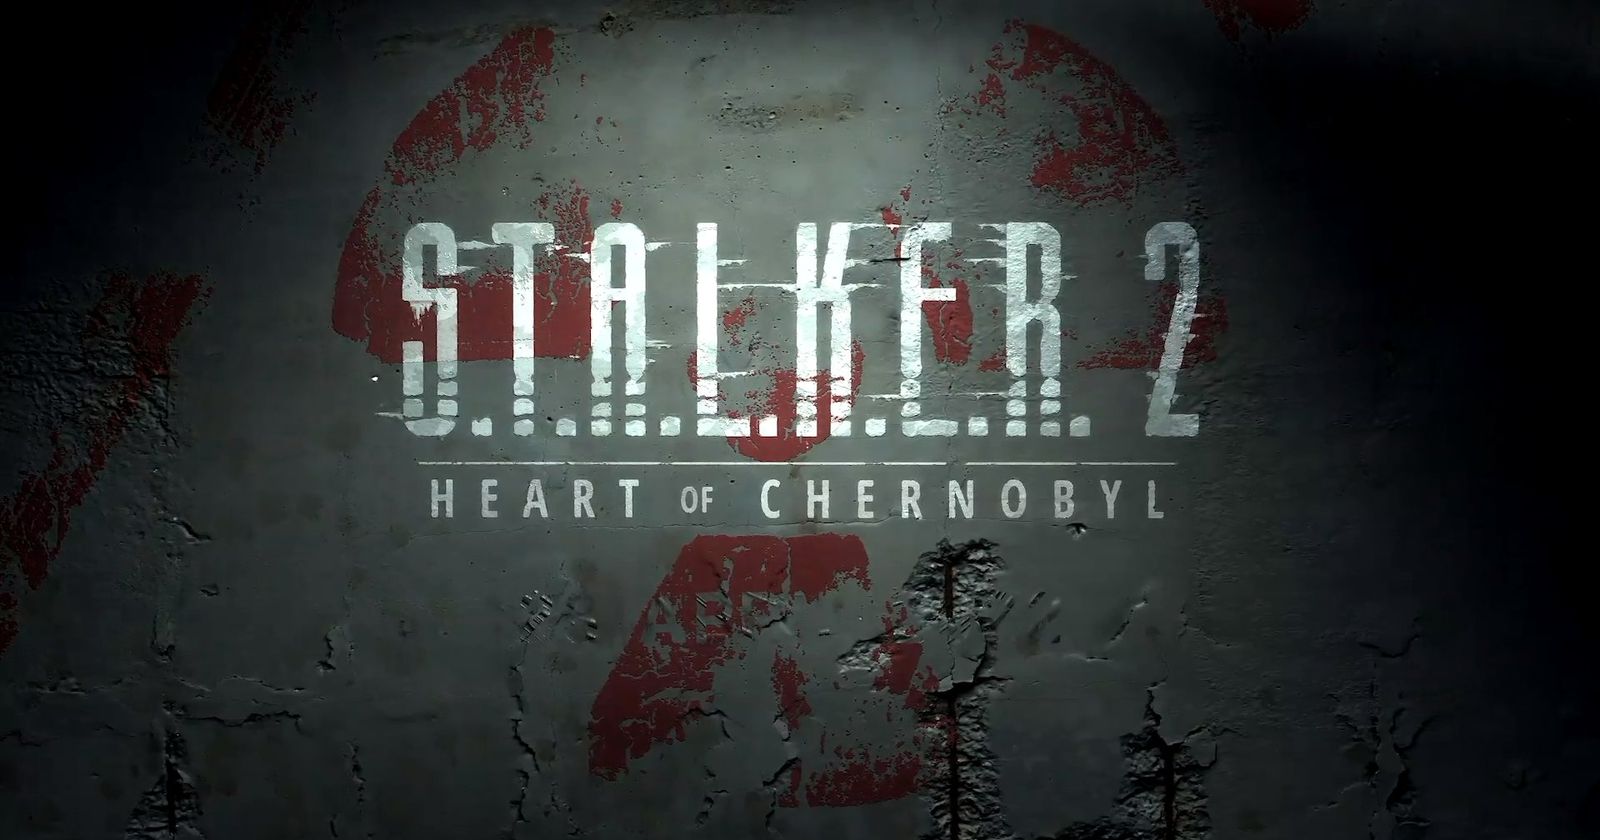 Stalker 2 delayed until 2023